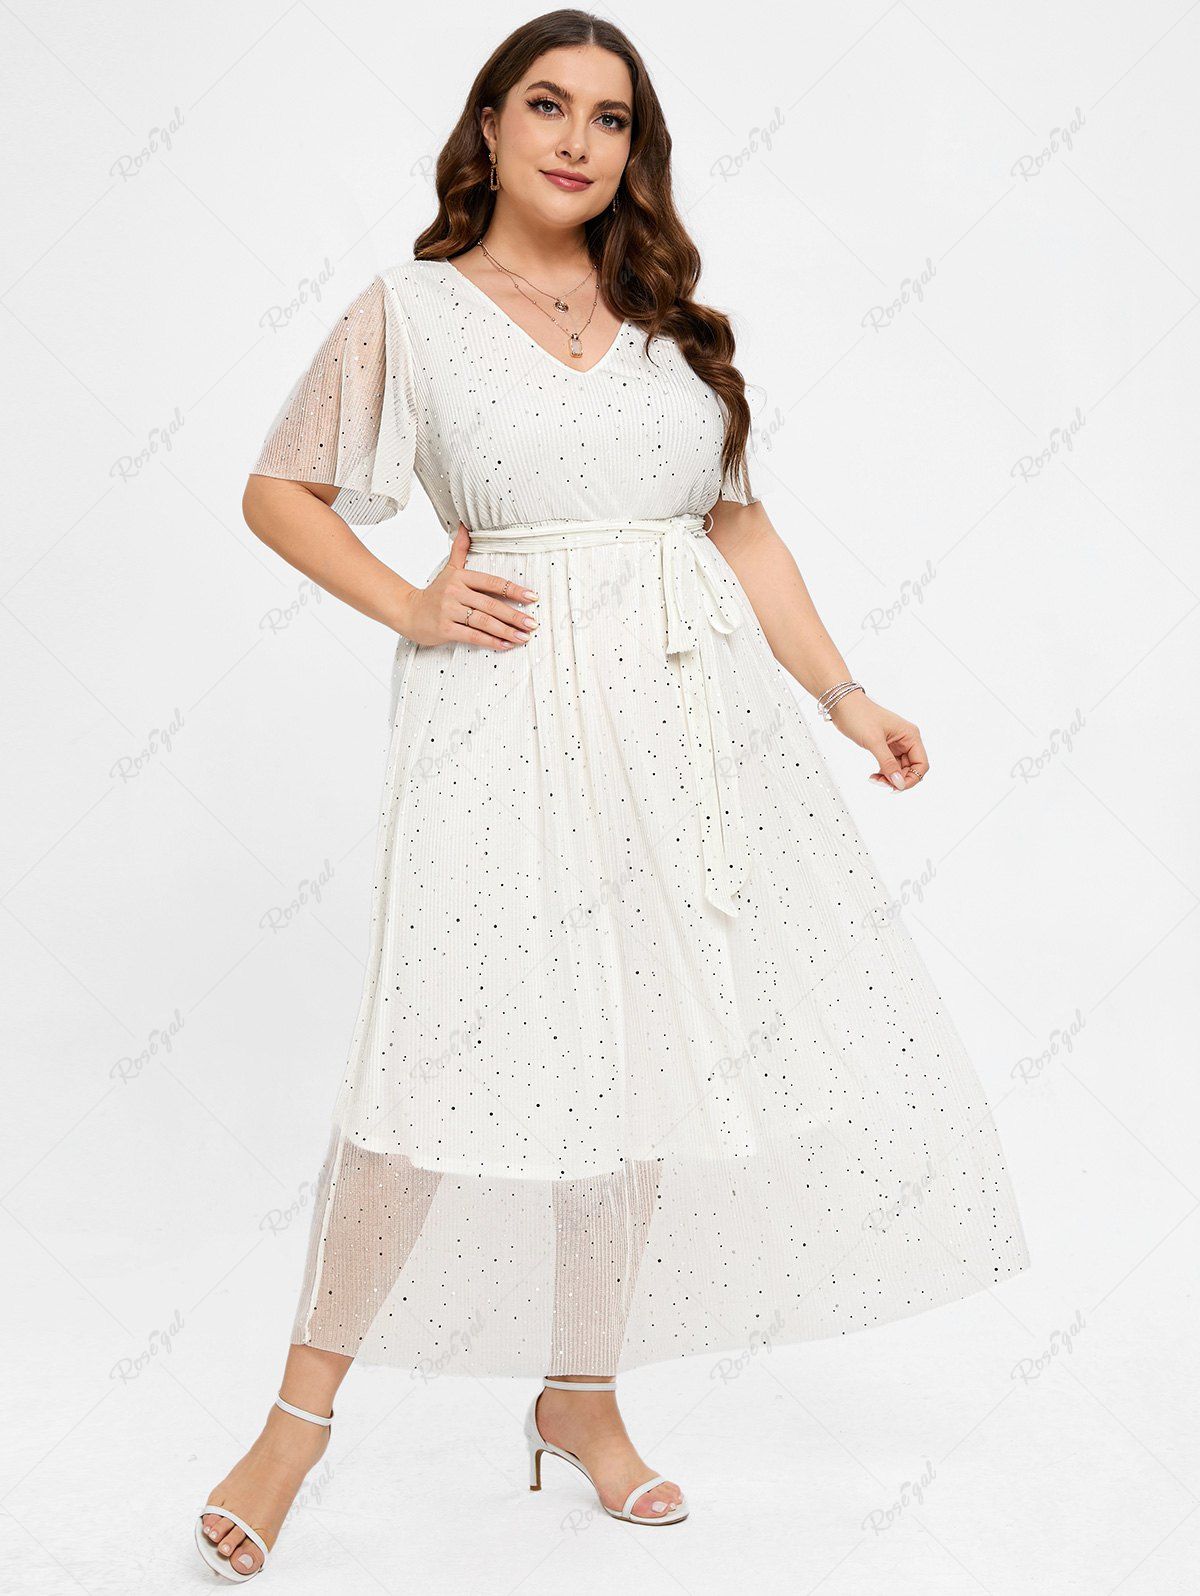 Unique Plus Size Sparkling Sequins Polka Dot Belt A Line Gown Dress  